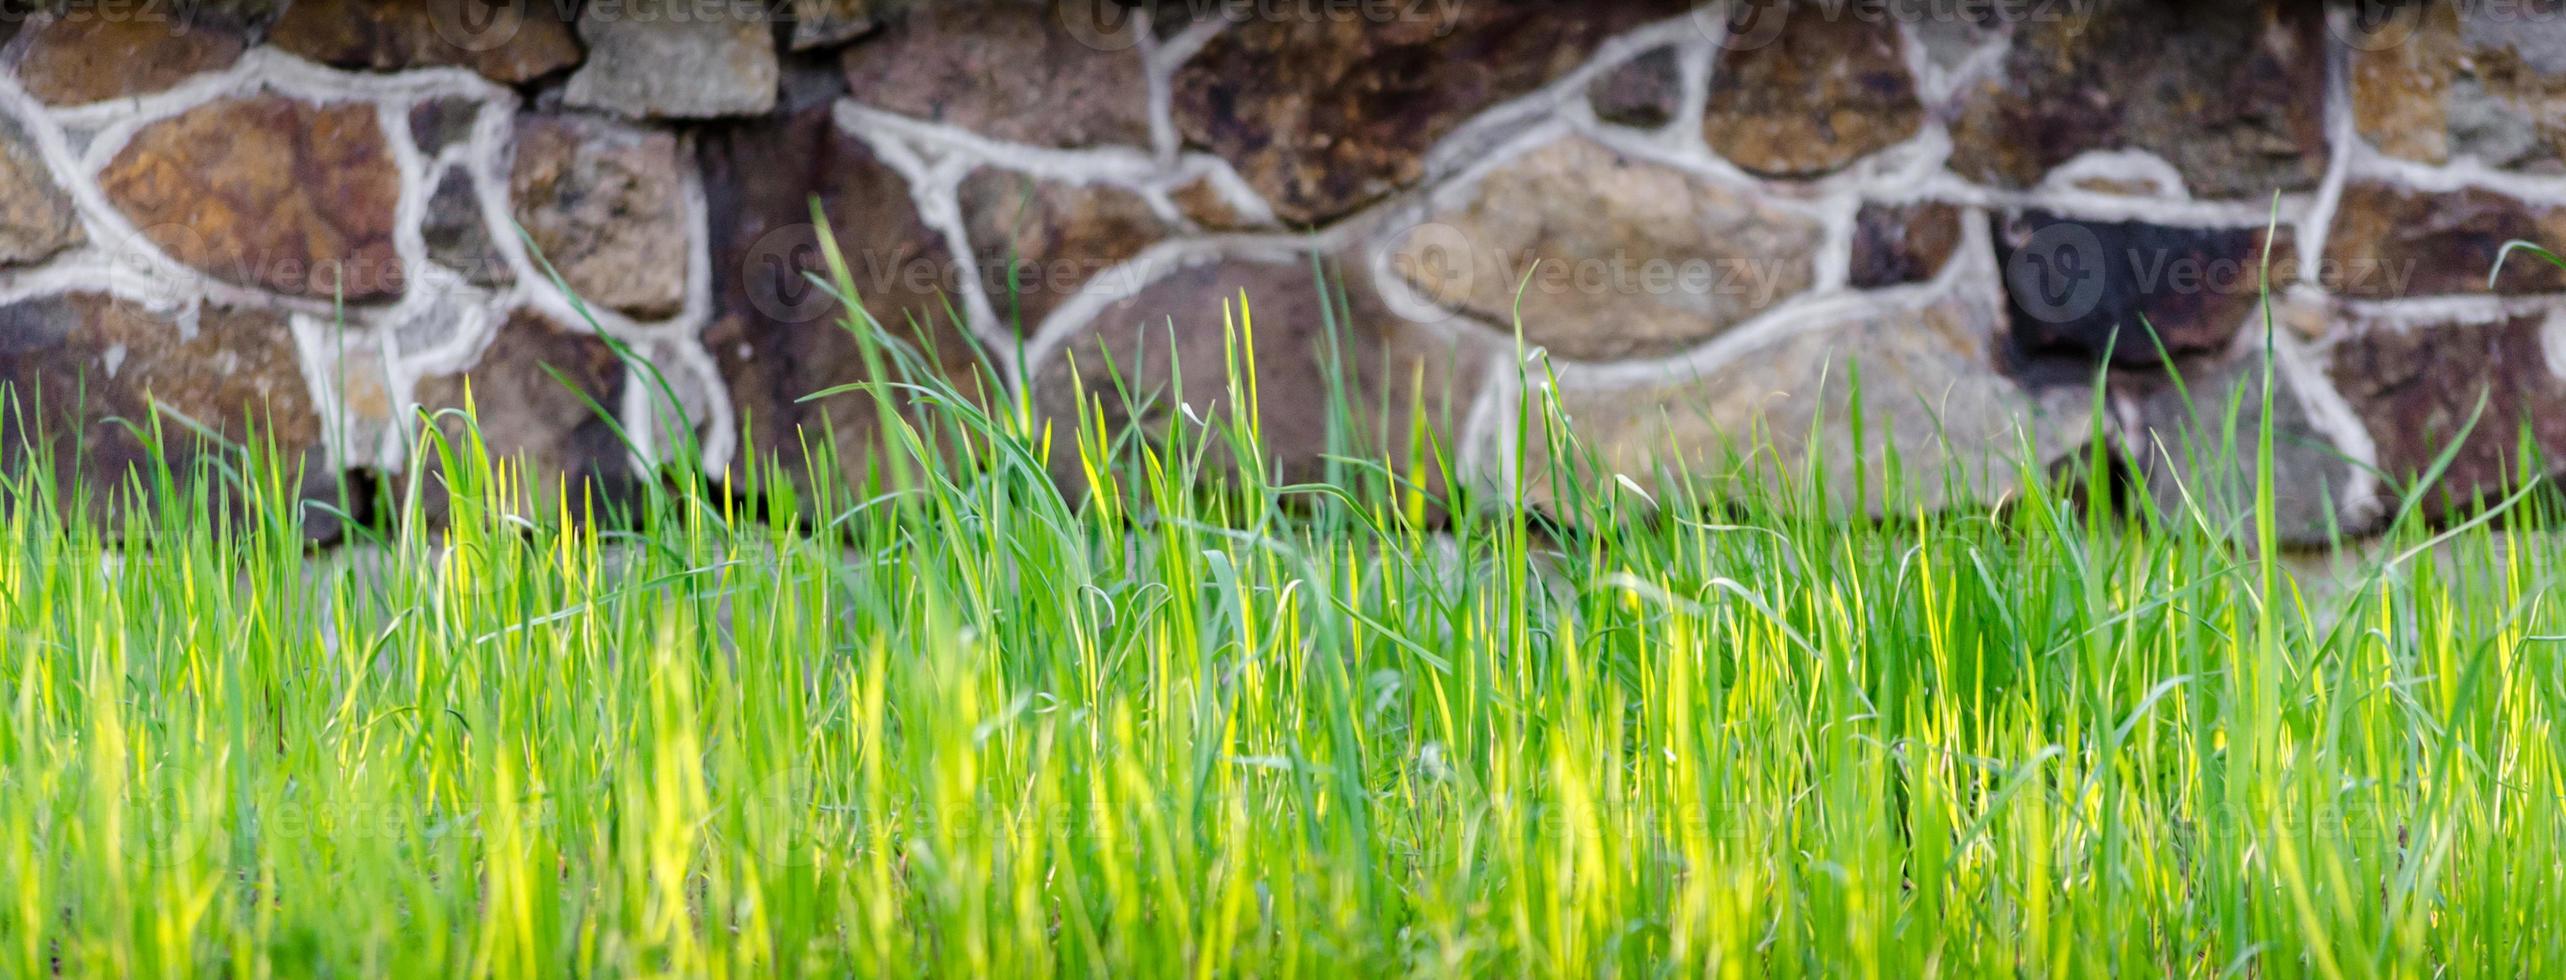 grama verde fresca no fundo da parede de pedra close-up foto